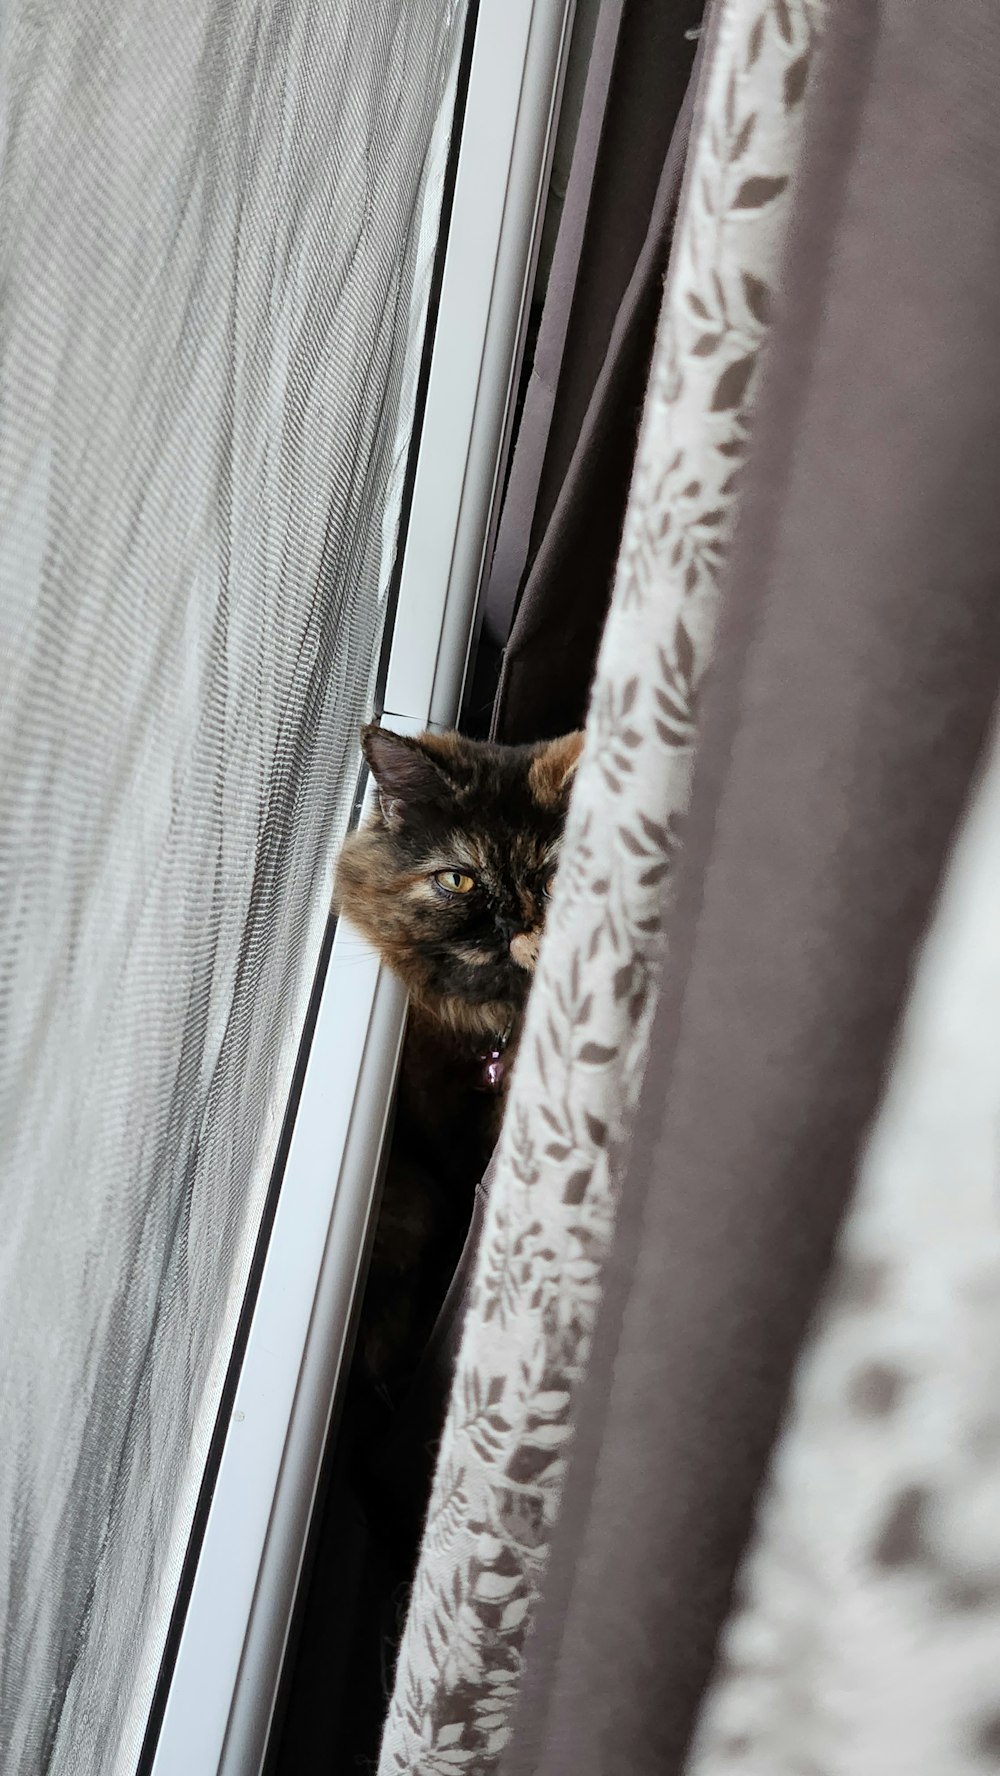 a cat is peeking out of a window